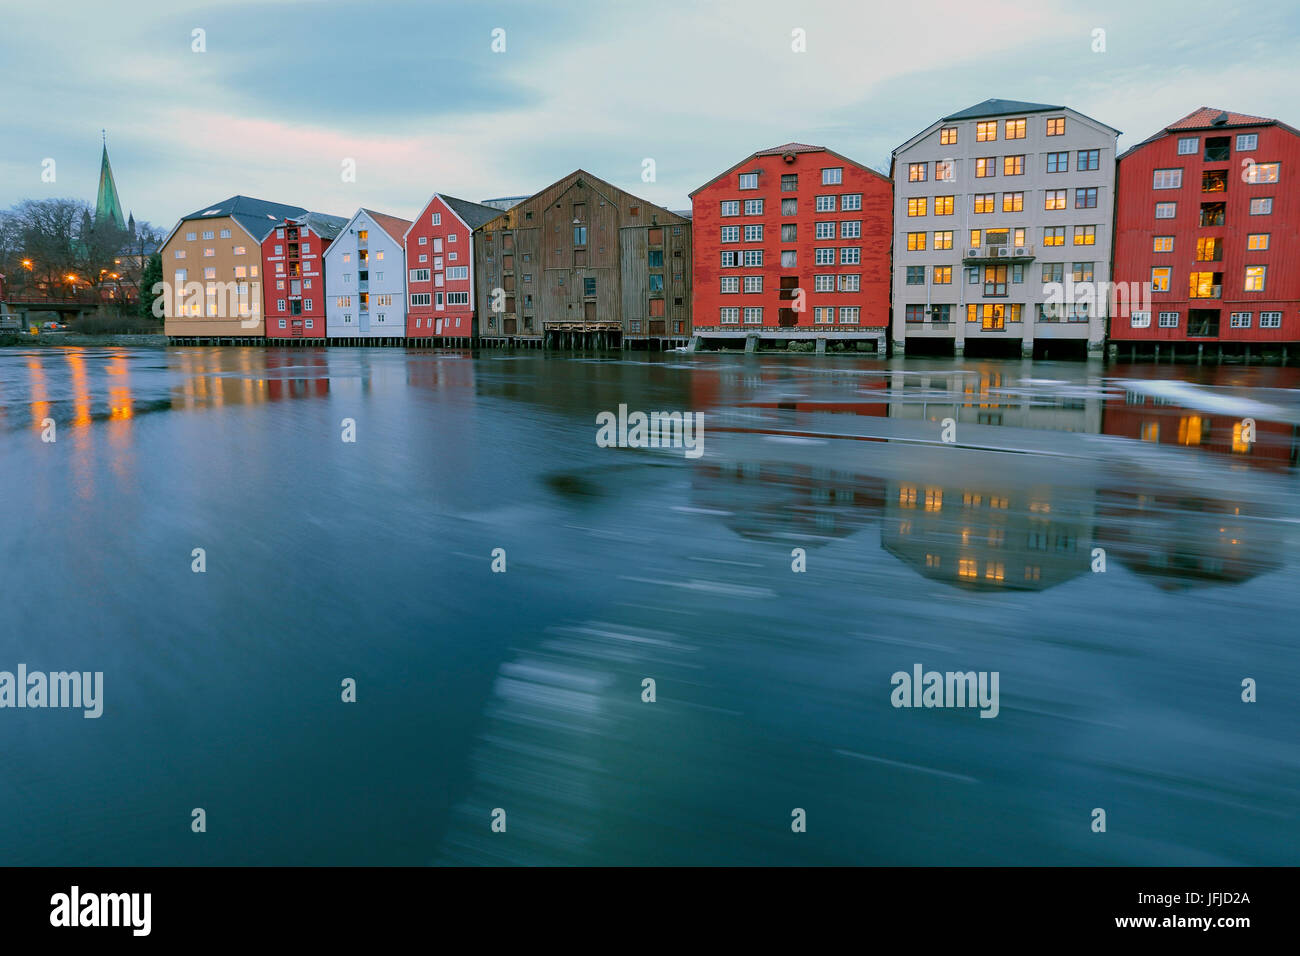 Maisons colorées se reflètent dans la rivière Nidelva Bakklandet Trondheim Norvège Europe Banque D'Images